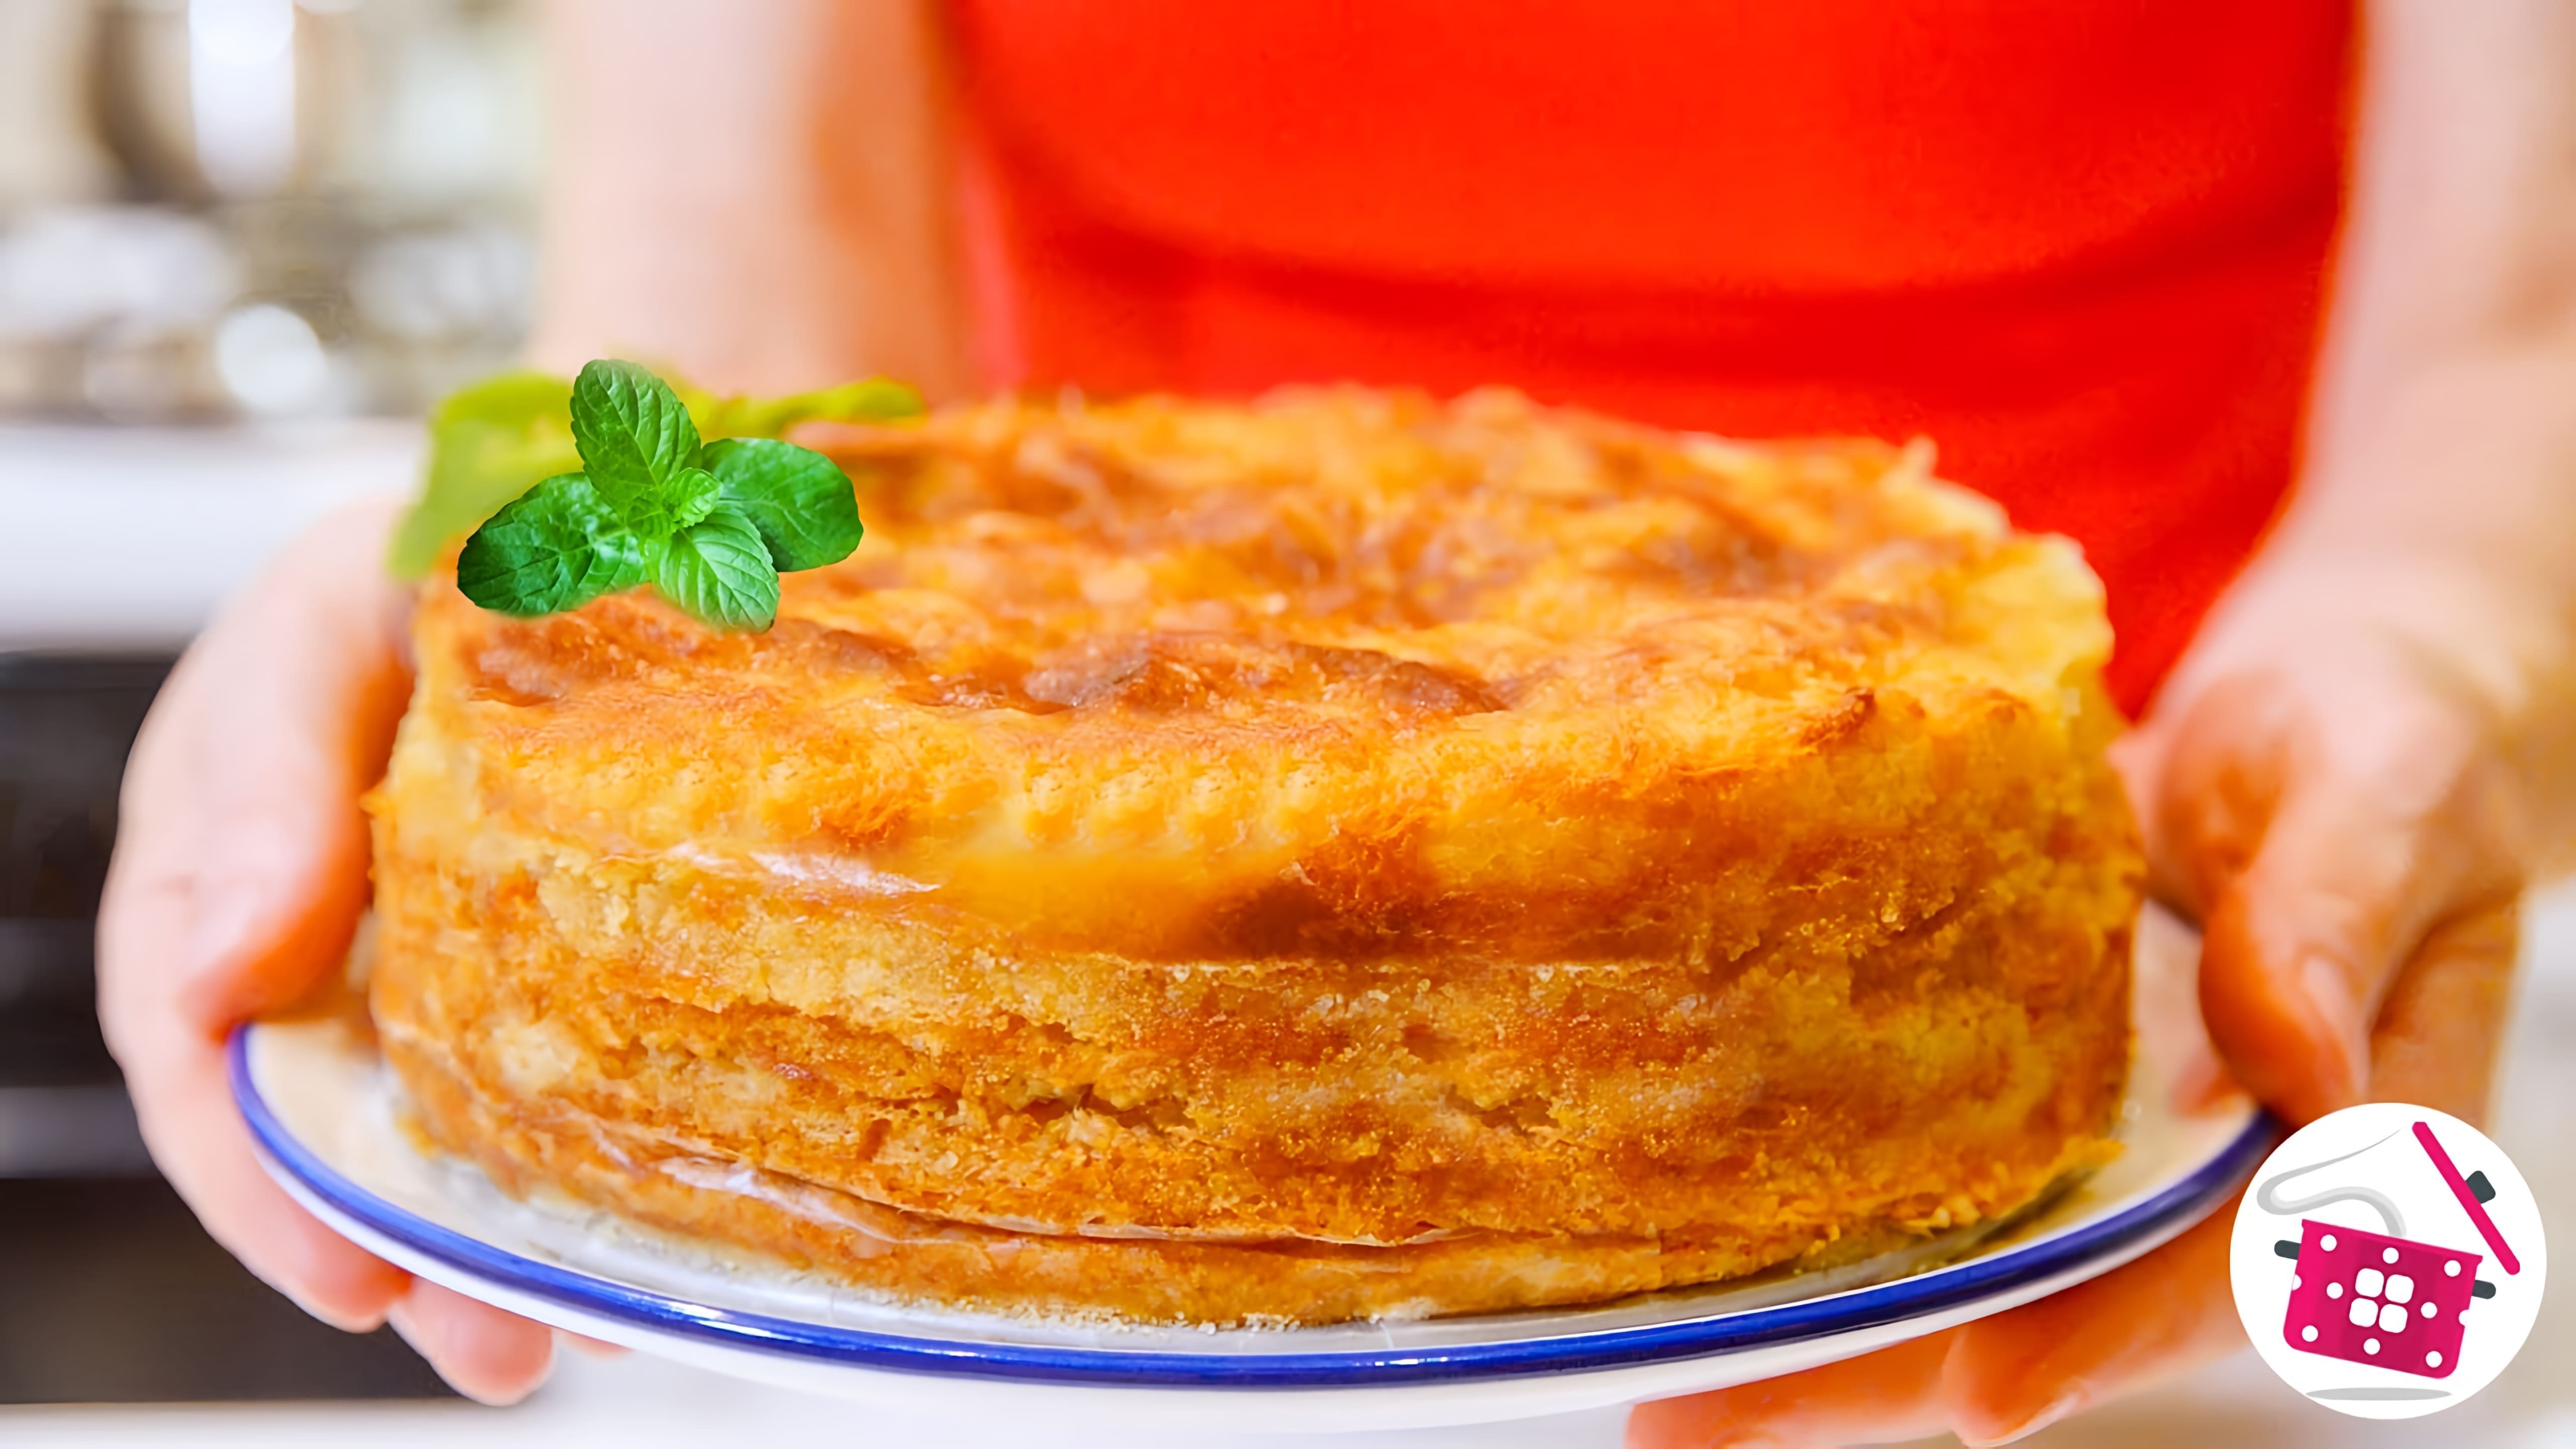 В этом видео демонстрируется рецепт приготовления яблочного пирога "Три стакана"